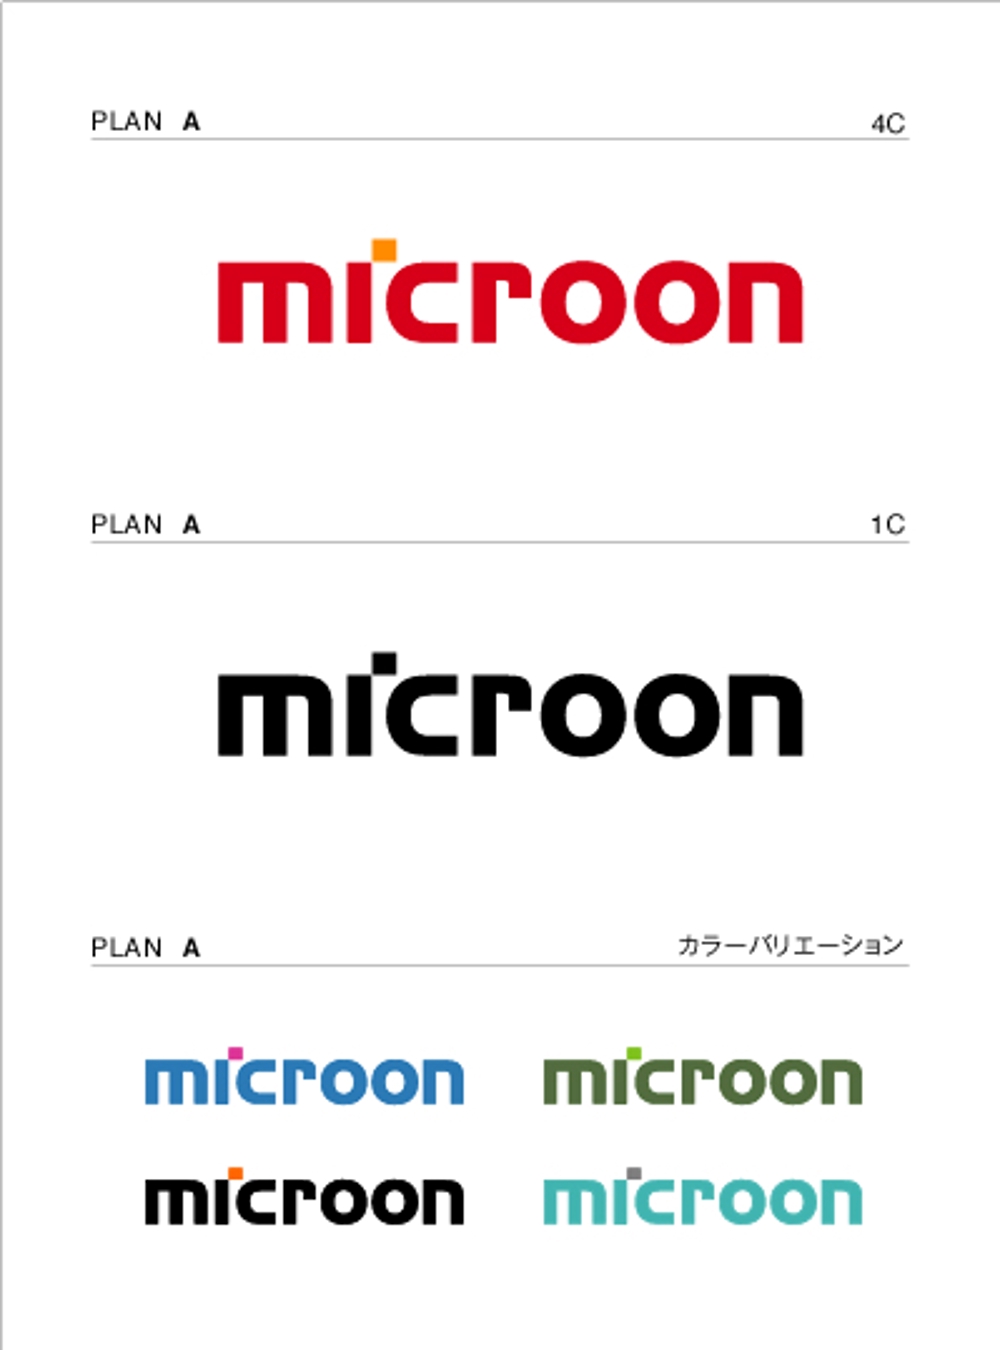 ネット企業のロゴ制作